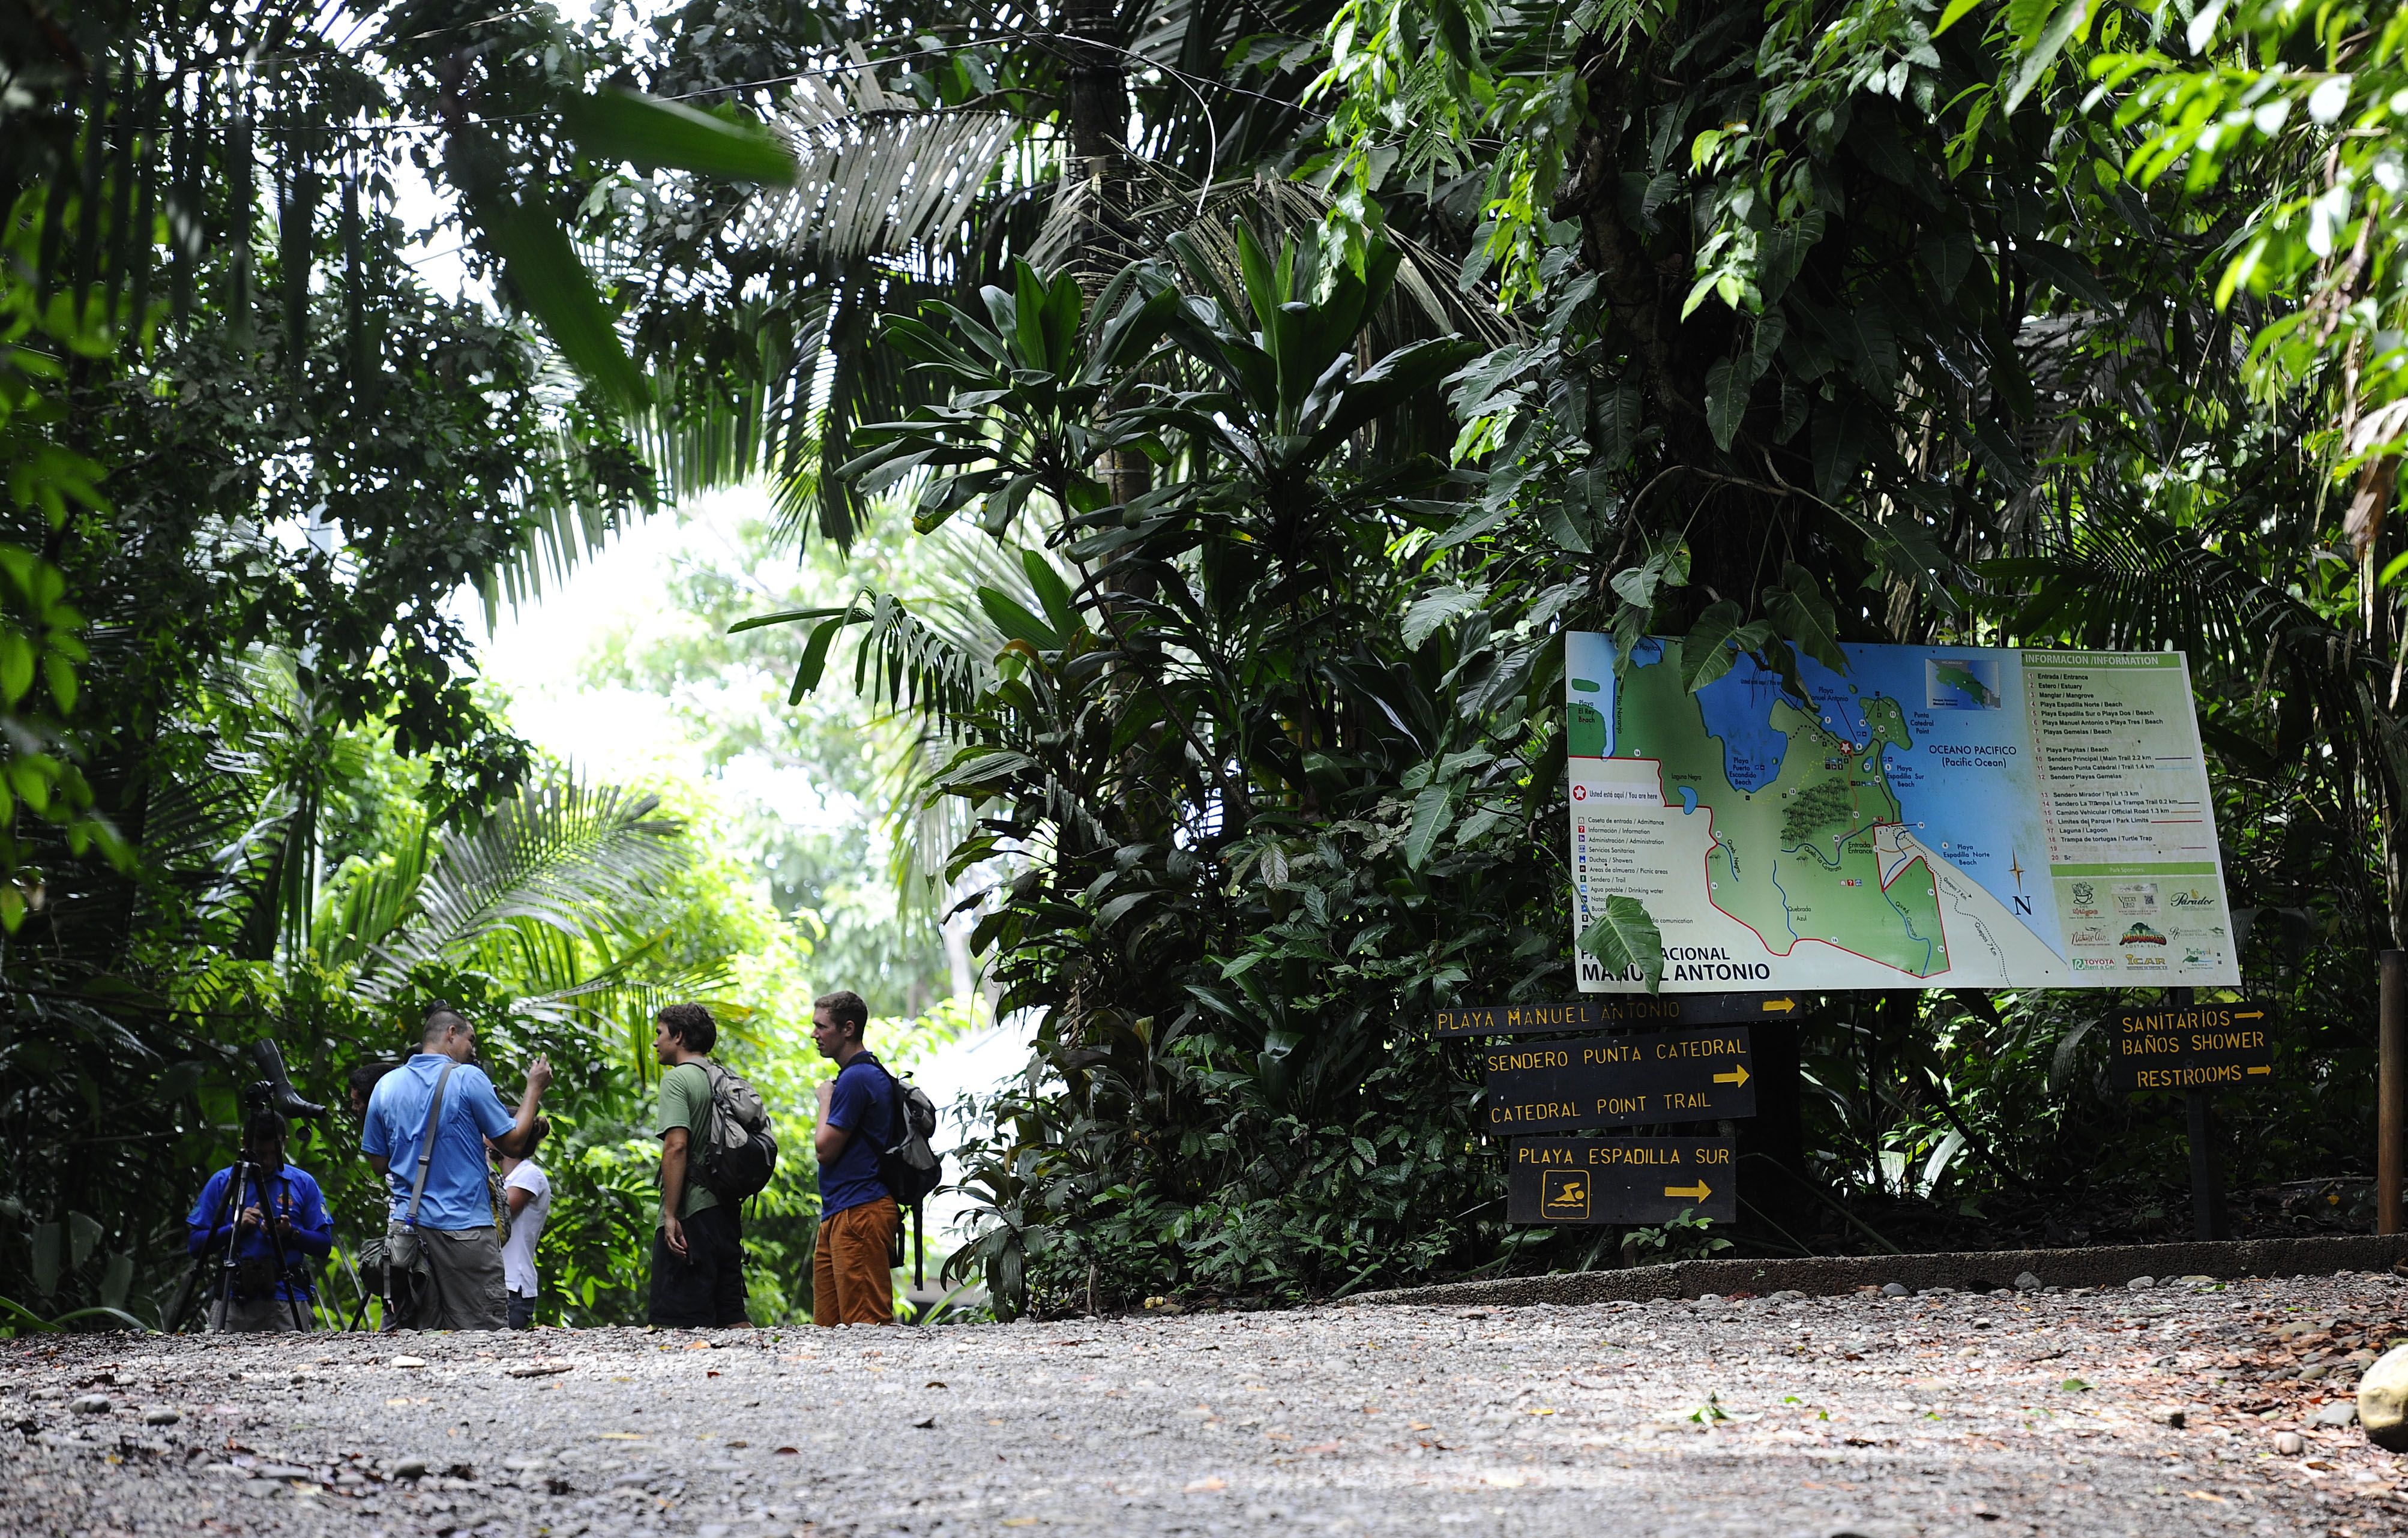 El Parque Manuel Antonio, en Quepos (Puntarenas), fue creado en 1972. Tiene una extensión de 680 hectáreas. Fotografía: 